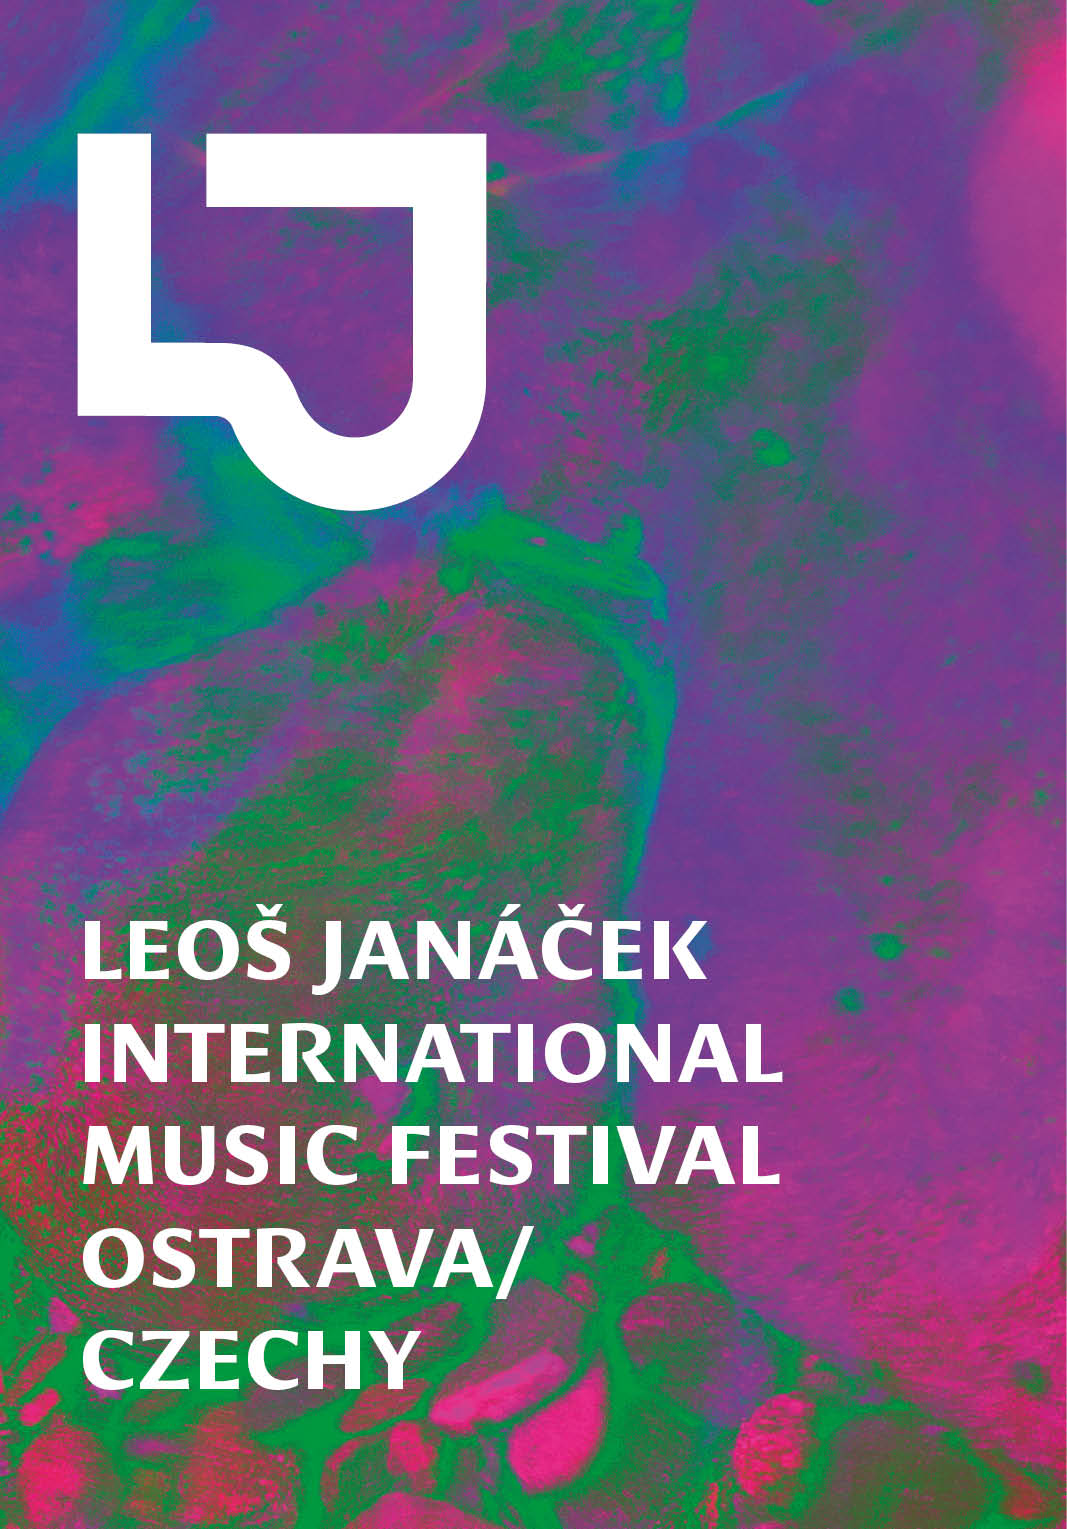 Międzynarodowy Festiwal Muzyczny im. Leoša Janáčka w Ostrawie